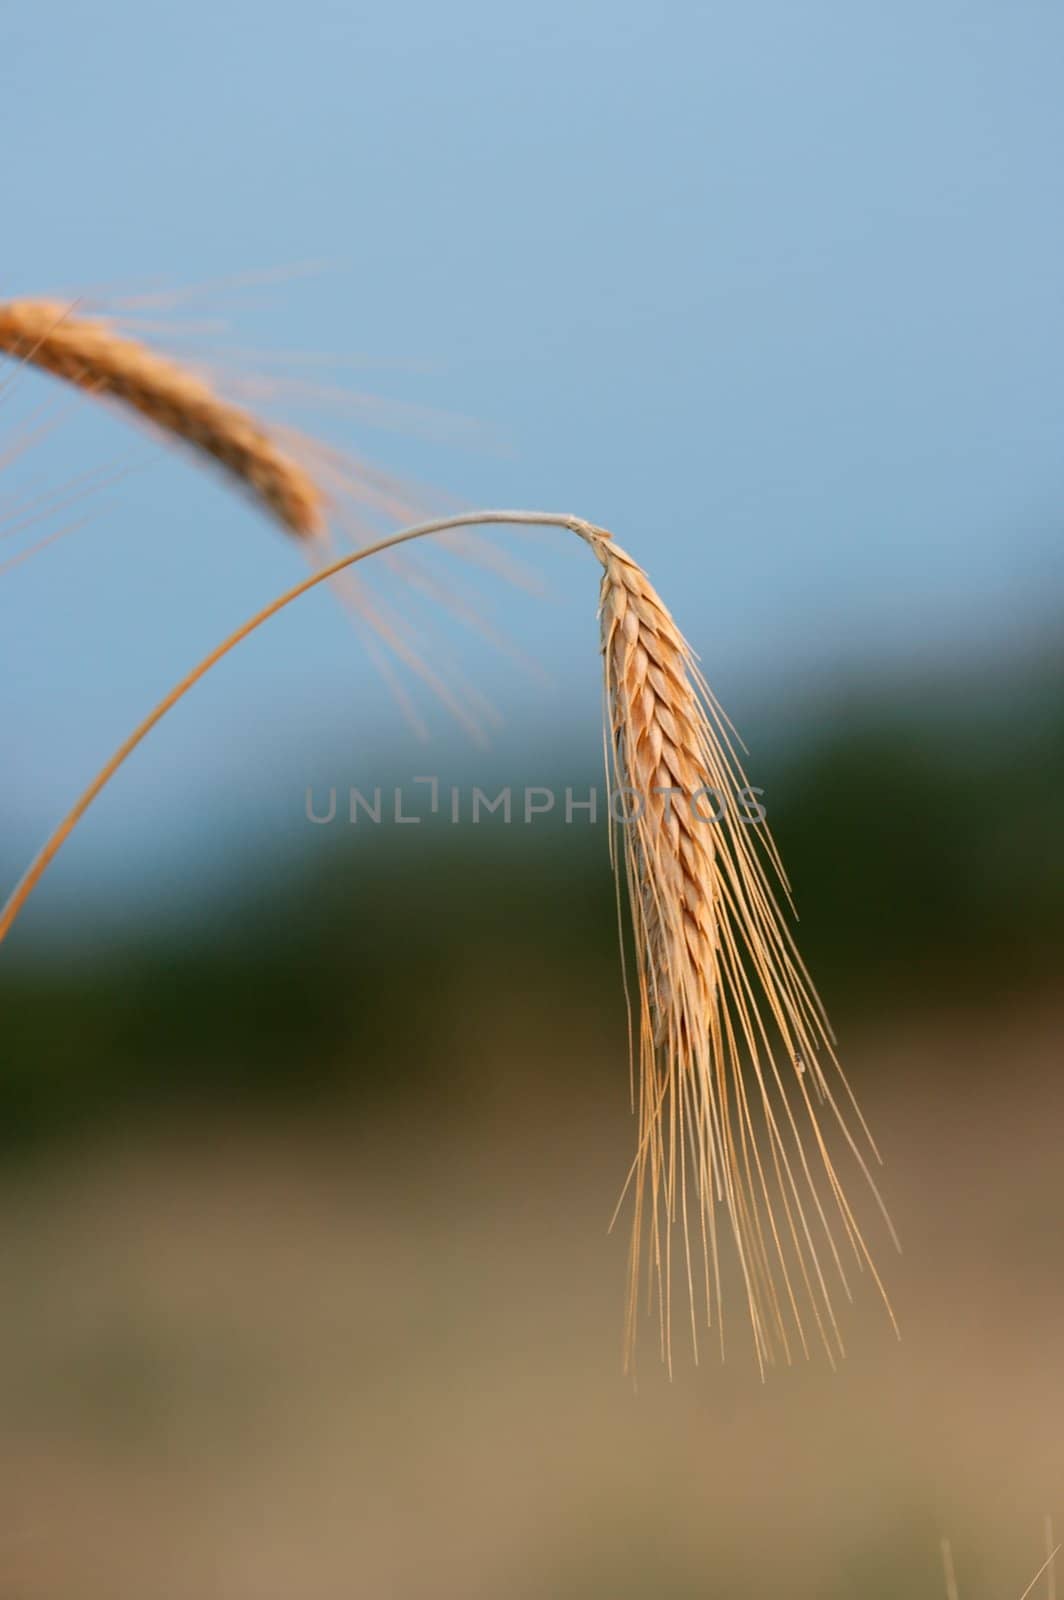 Golden wheat spike on a field